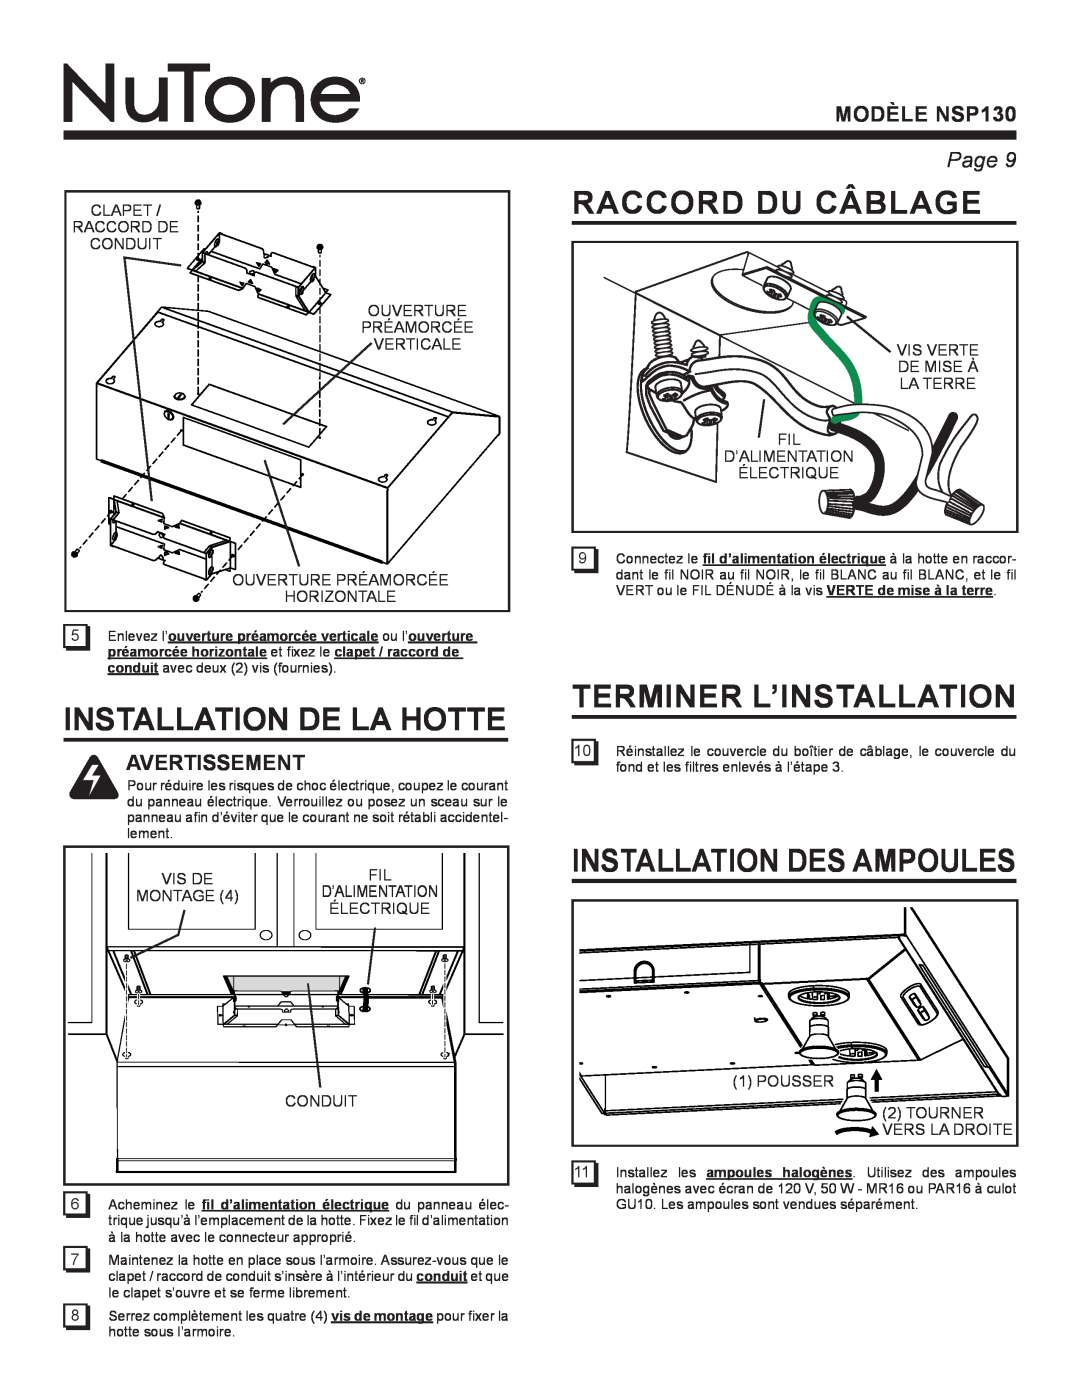 NuTone NSP130 Installation De La Hotte, Raccord Du Câblage, Terminer L’Installation, Installation Des Ampoules, Page  